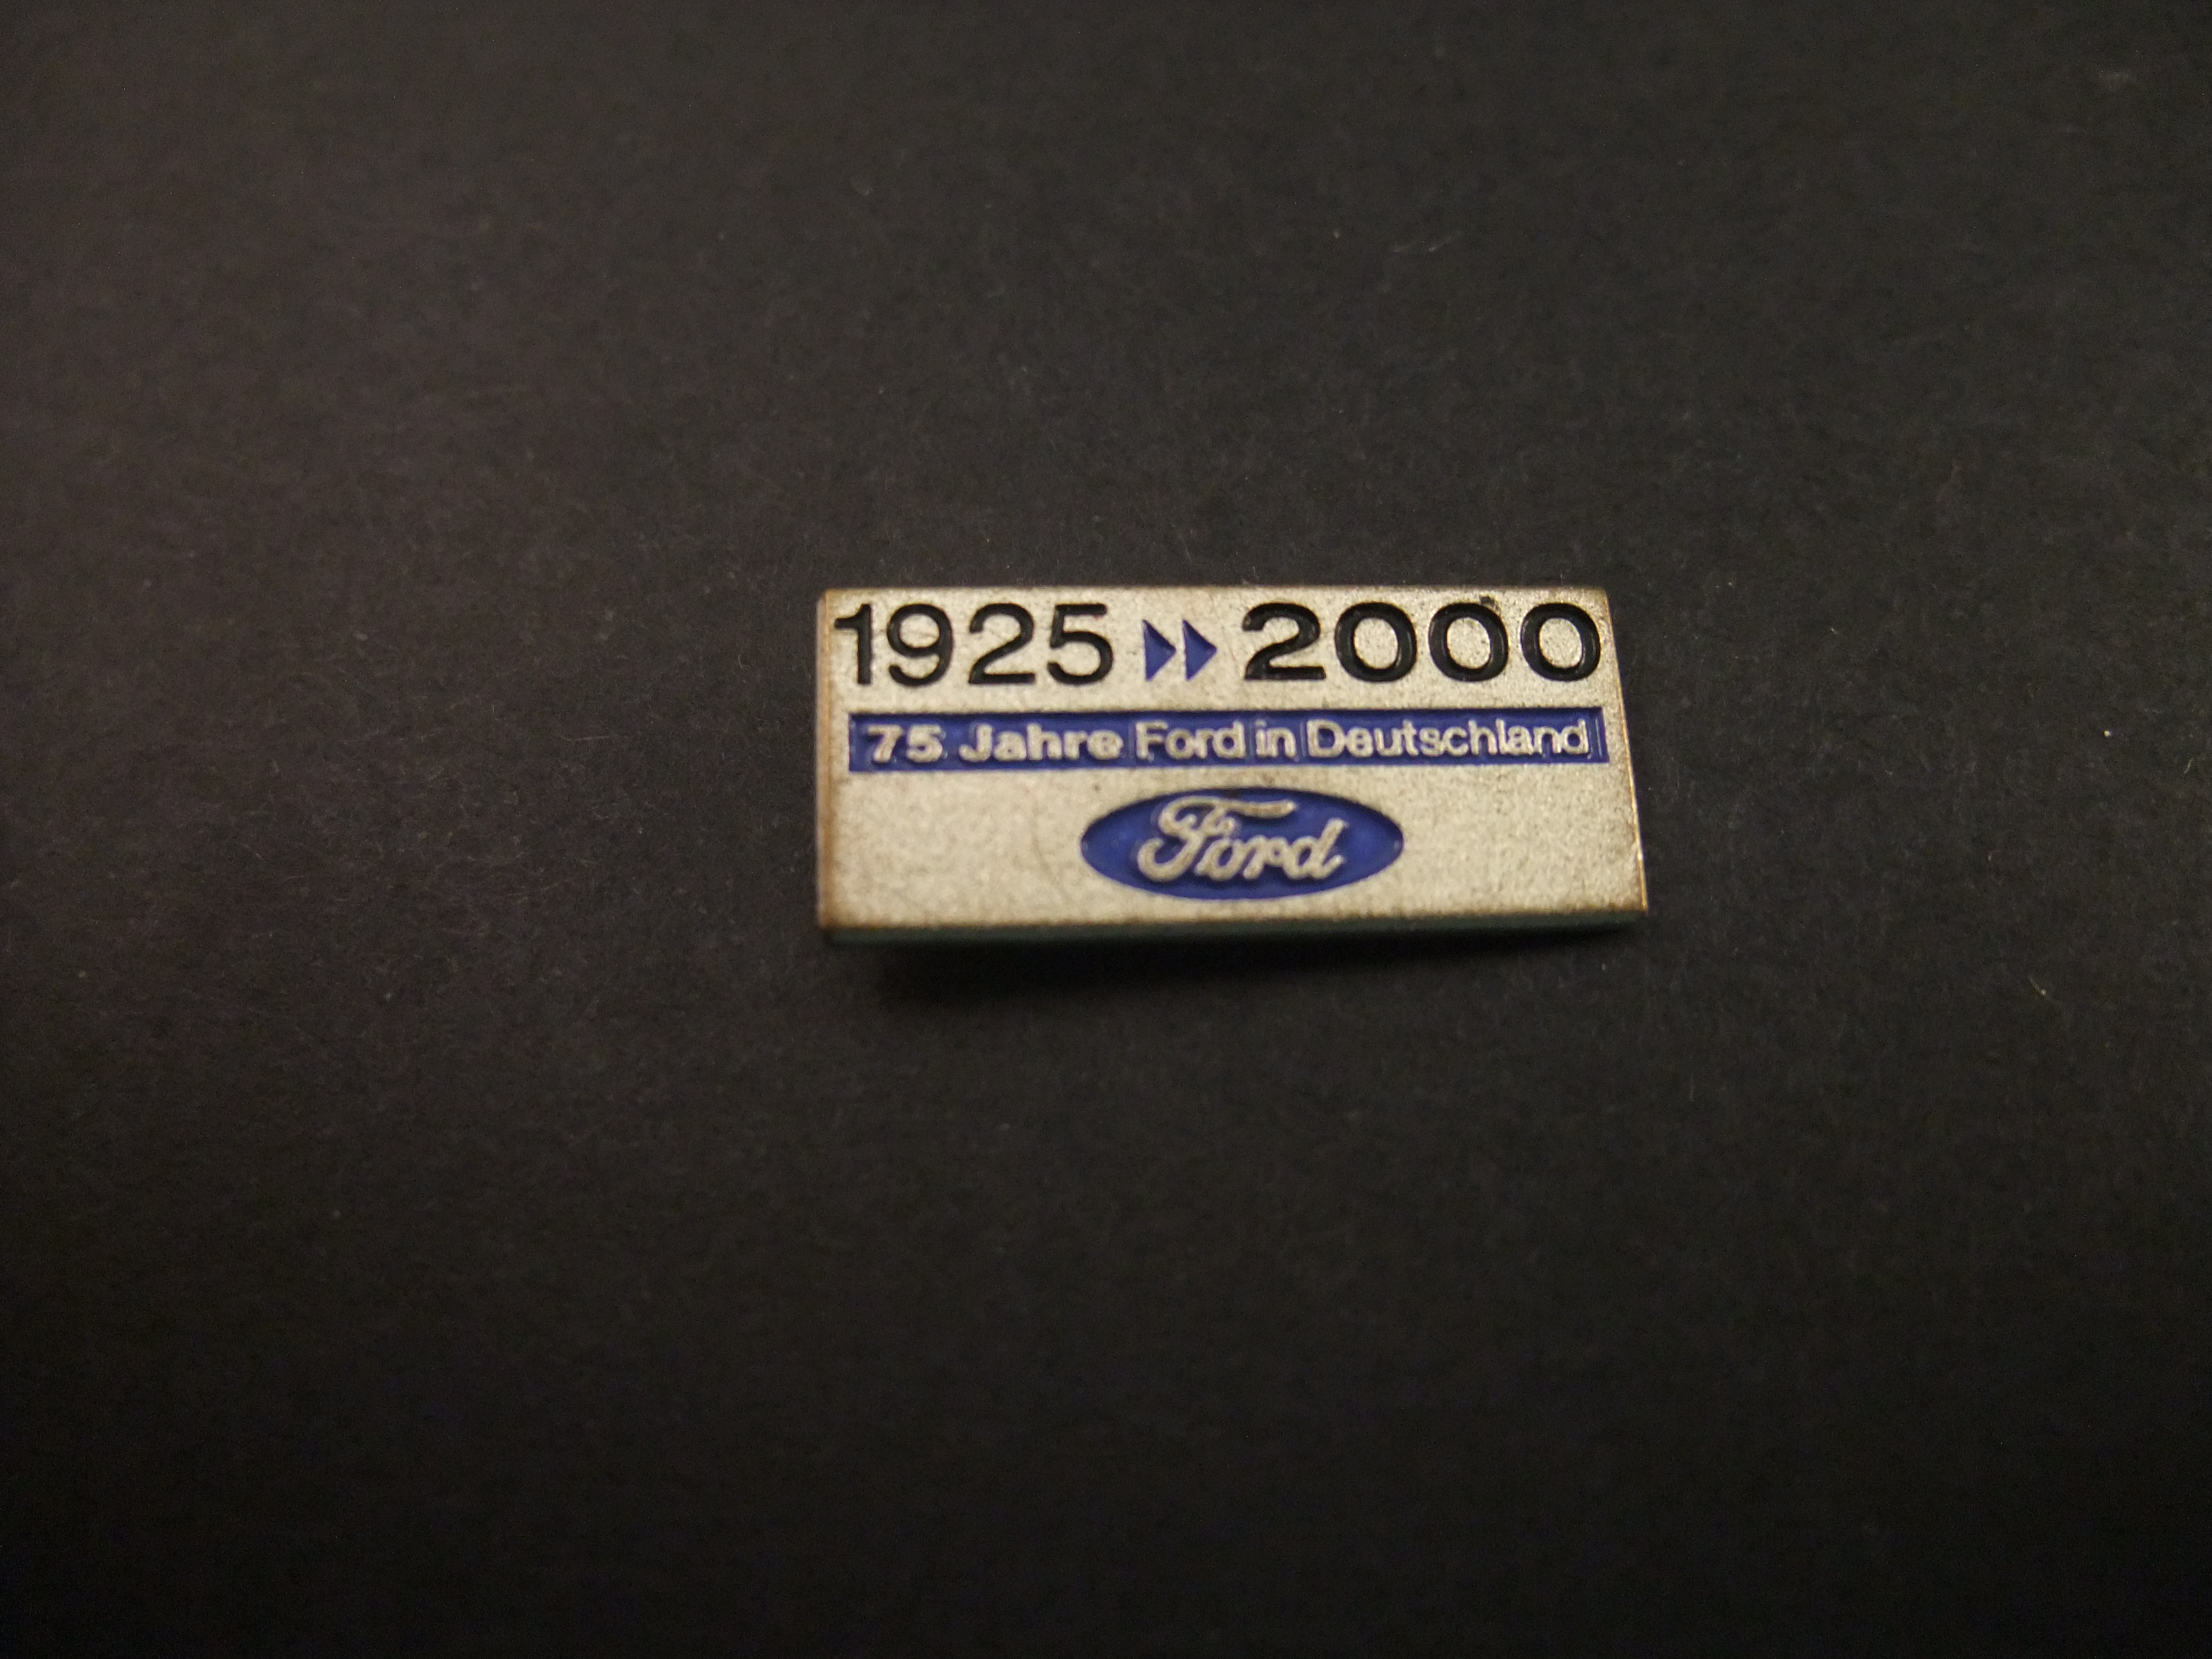 75 Jahre Ford in Deutschland (Ford 75 jaar in Duitsland jubileum)